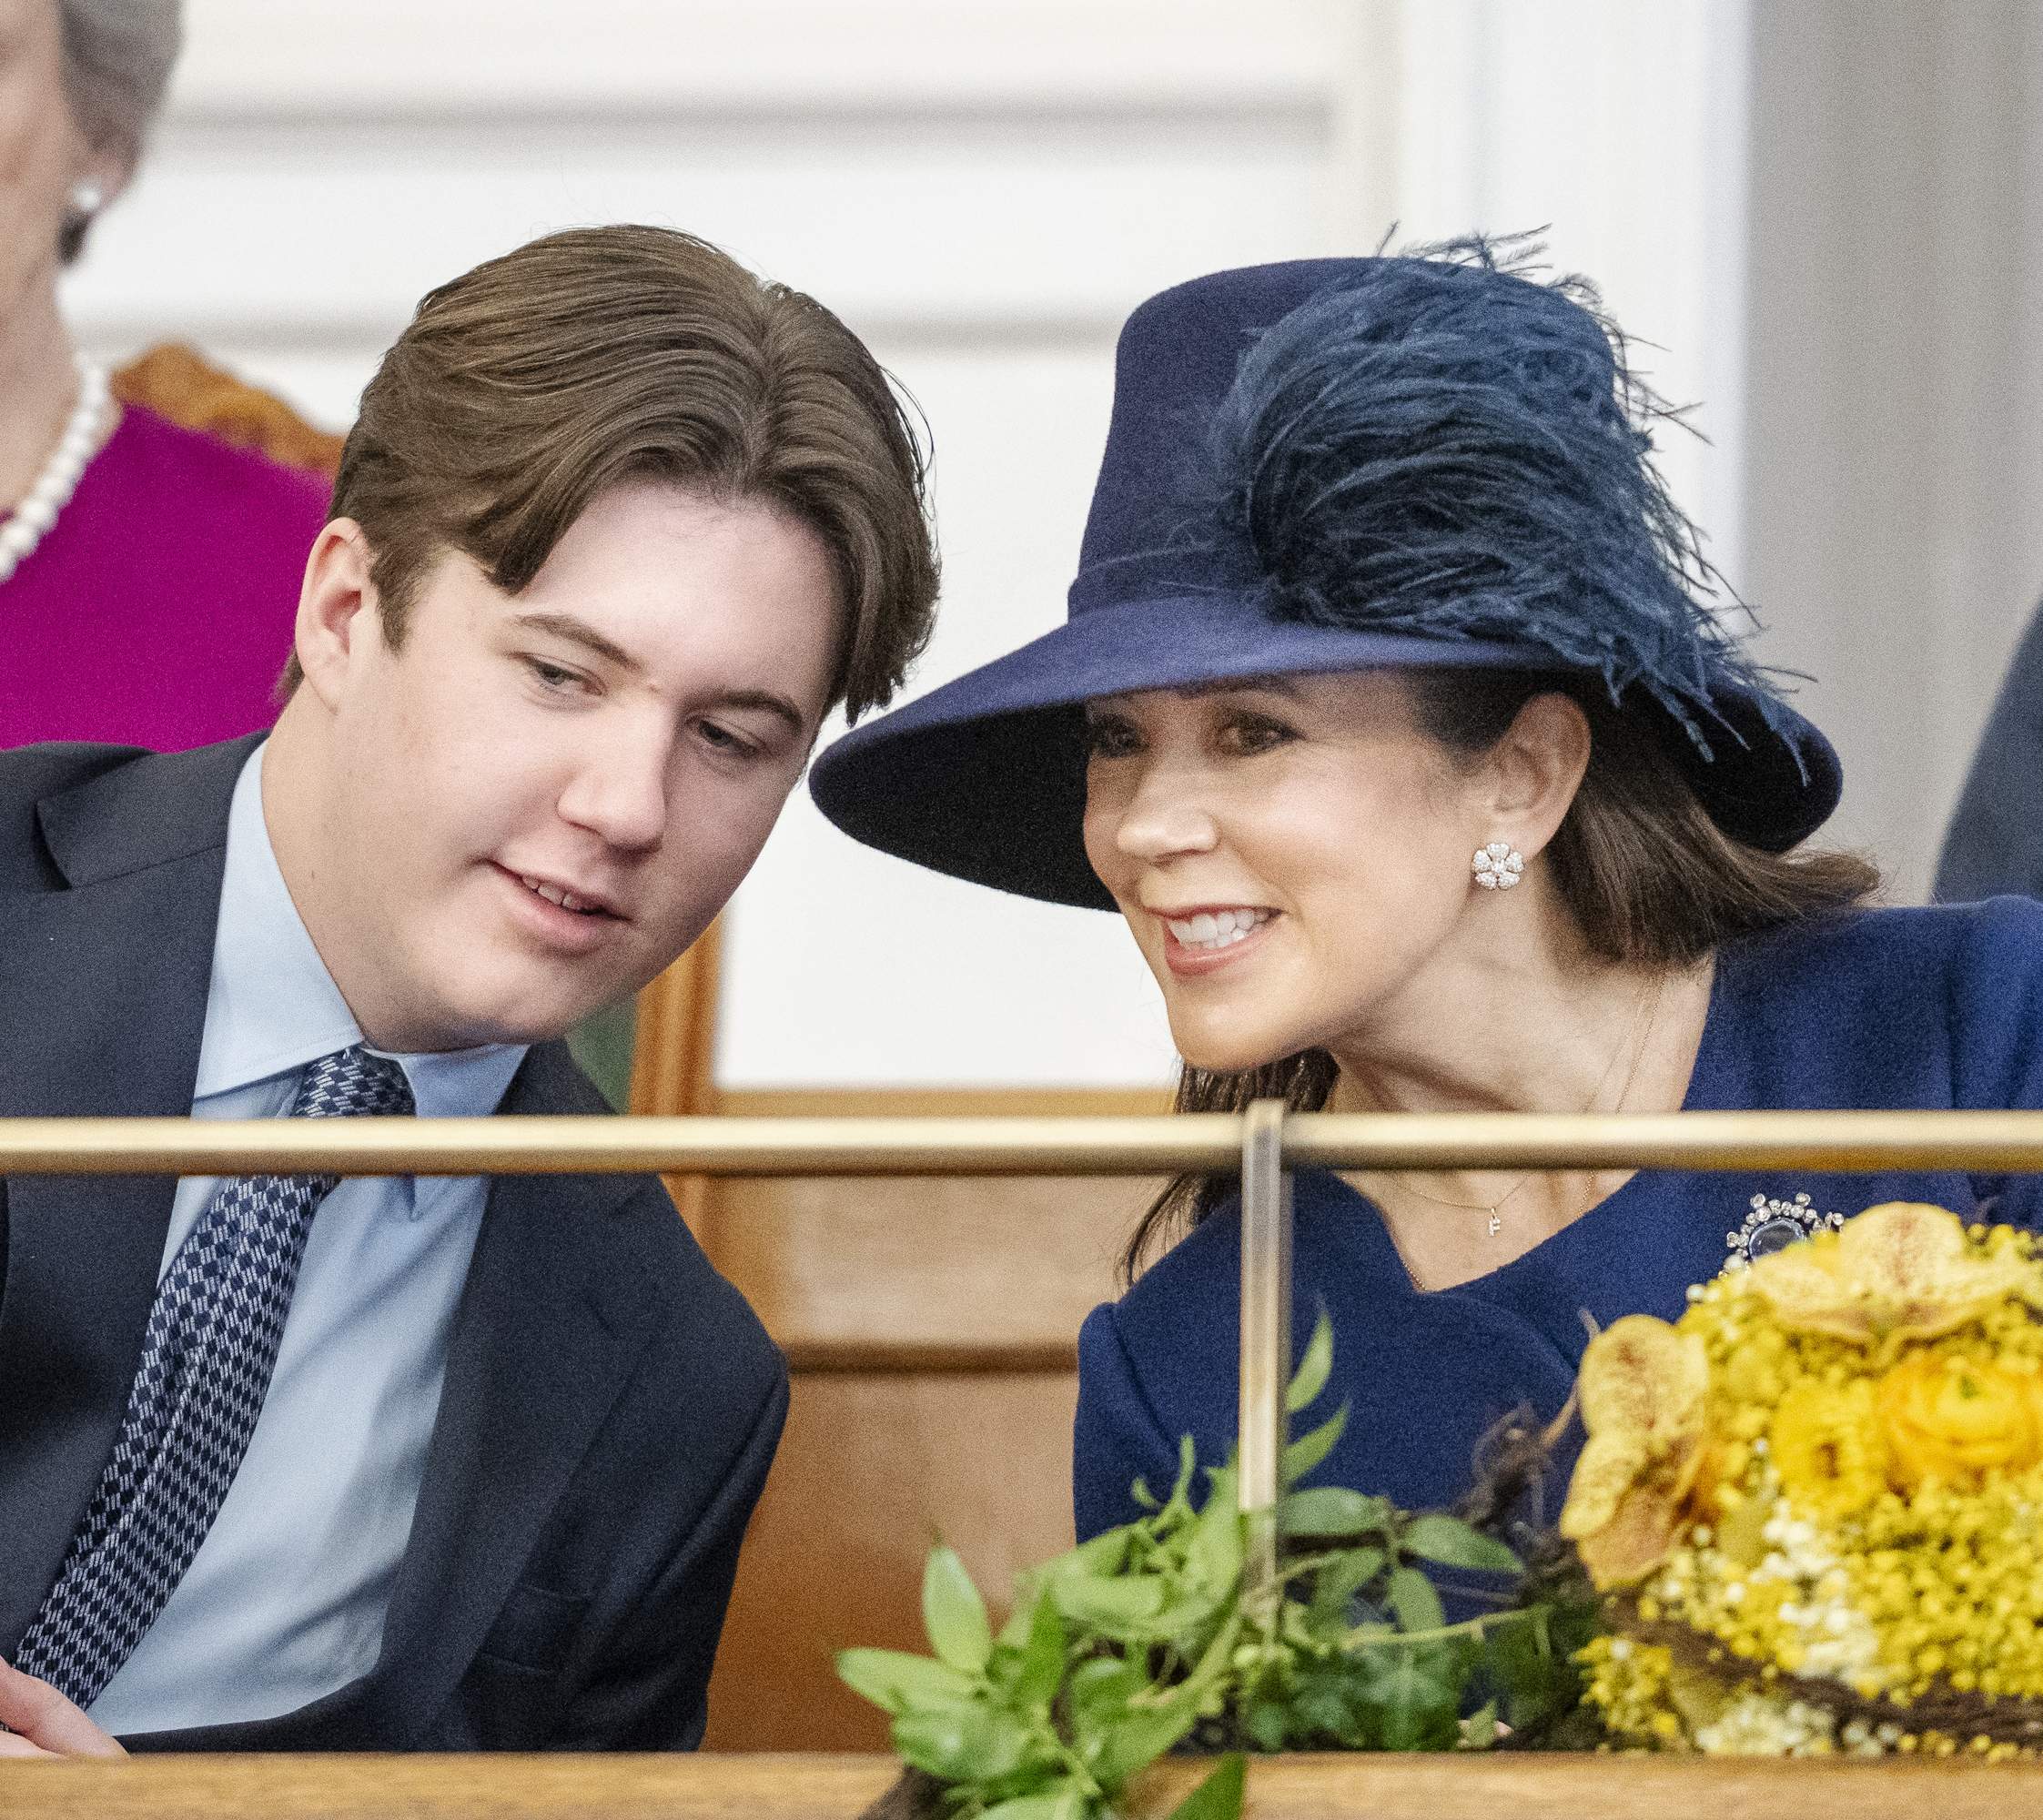 Christian de Dinamarca a per la nova soltera d'or royal, ha deixat el nòvio